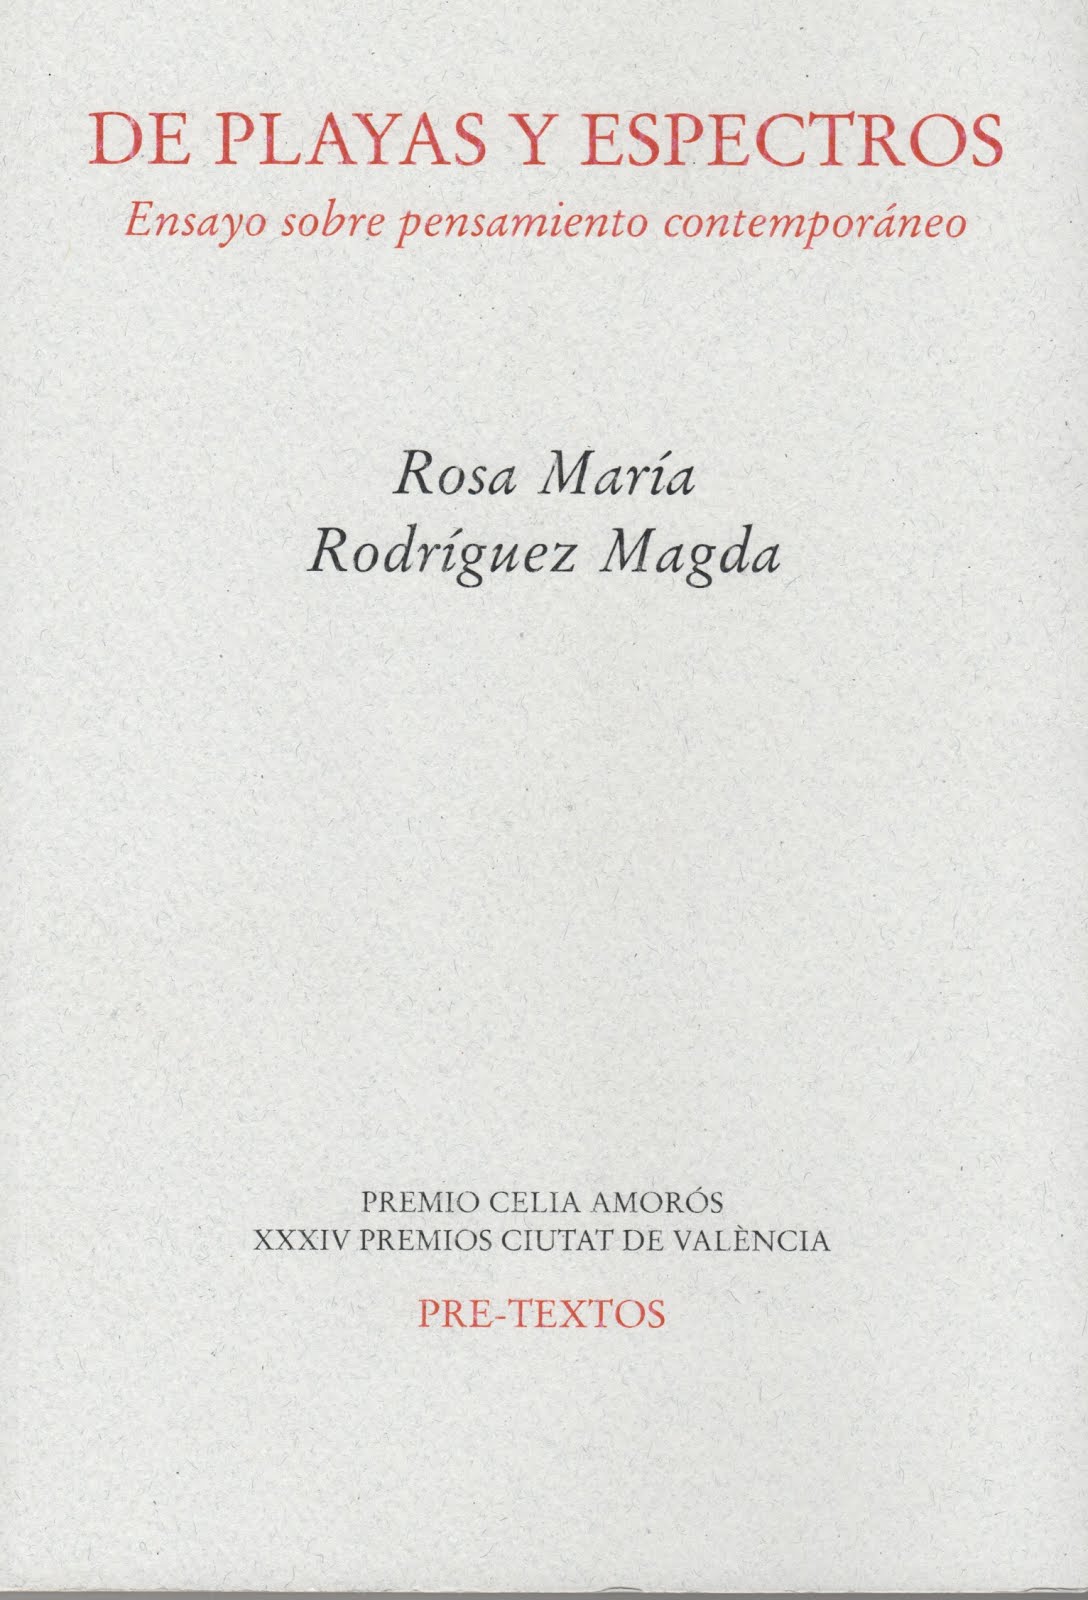 Rosa María Rodríguez Magda (De playas y espectros) Ensayo sobre pensamiento contemporáneo